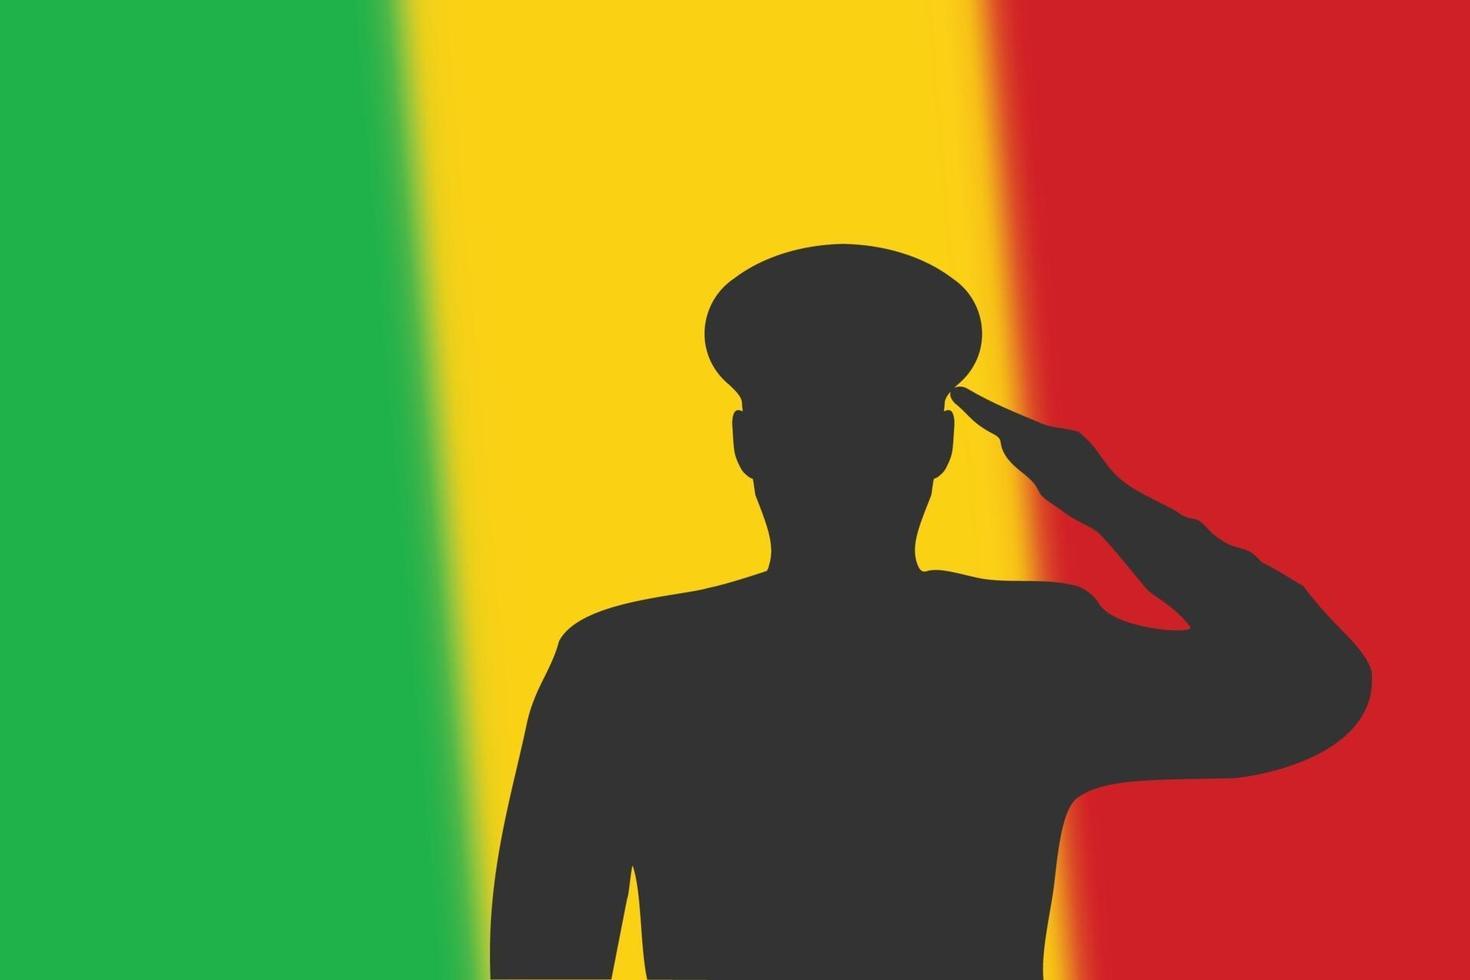 Lötsilhouette auf unscharfem Hintergrund mit Mali-Flagge. vektor